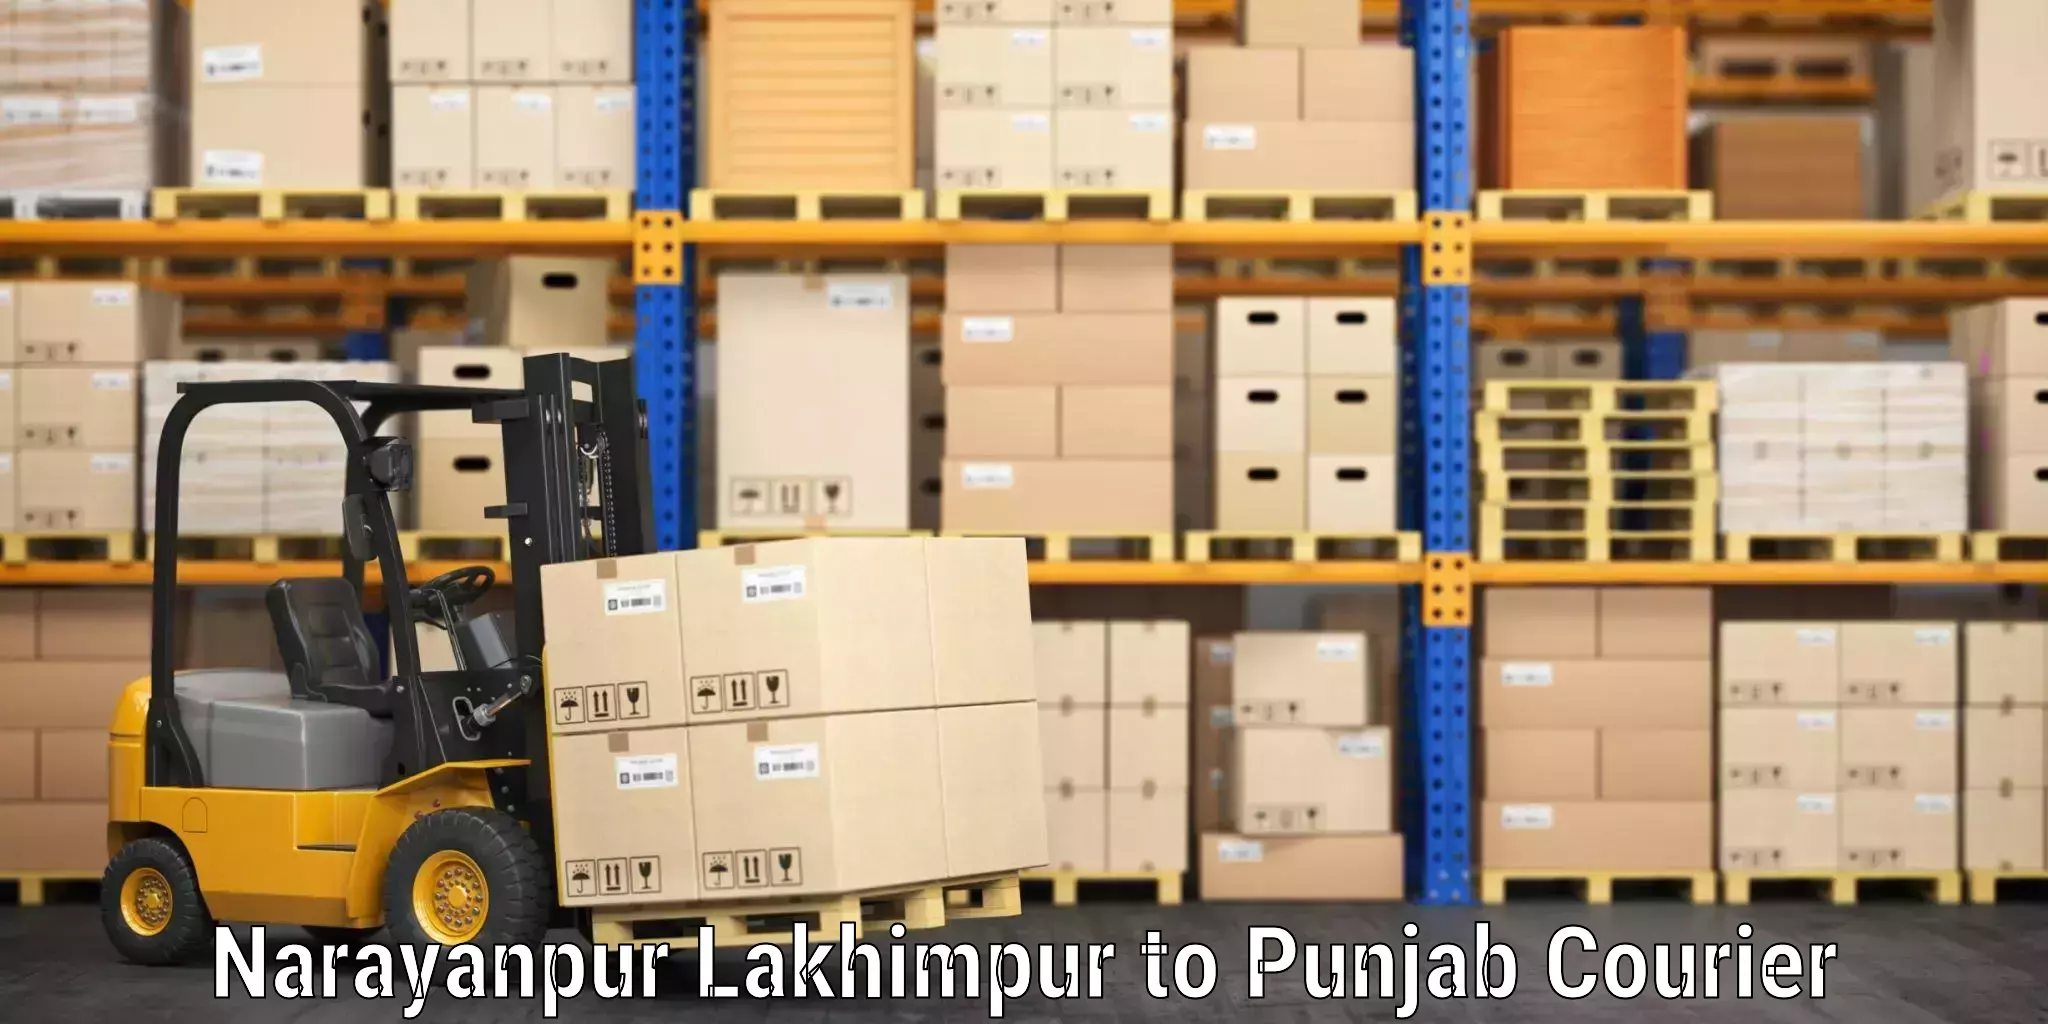 Baggage shipping optimization Narayanpur Lakhimpur to Talwara